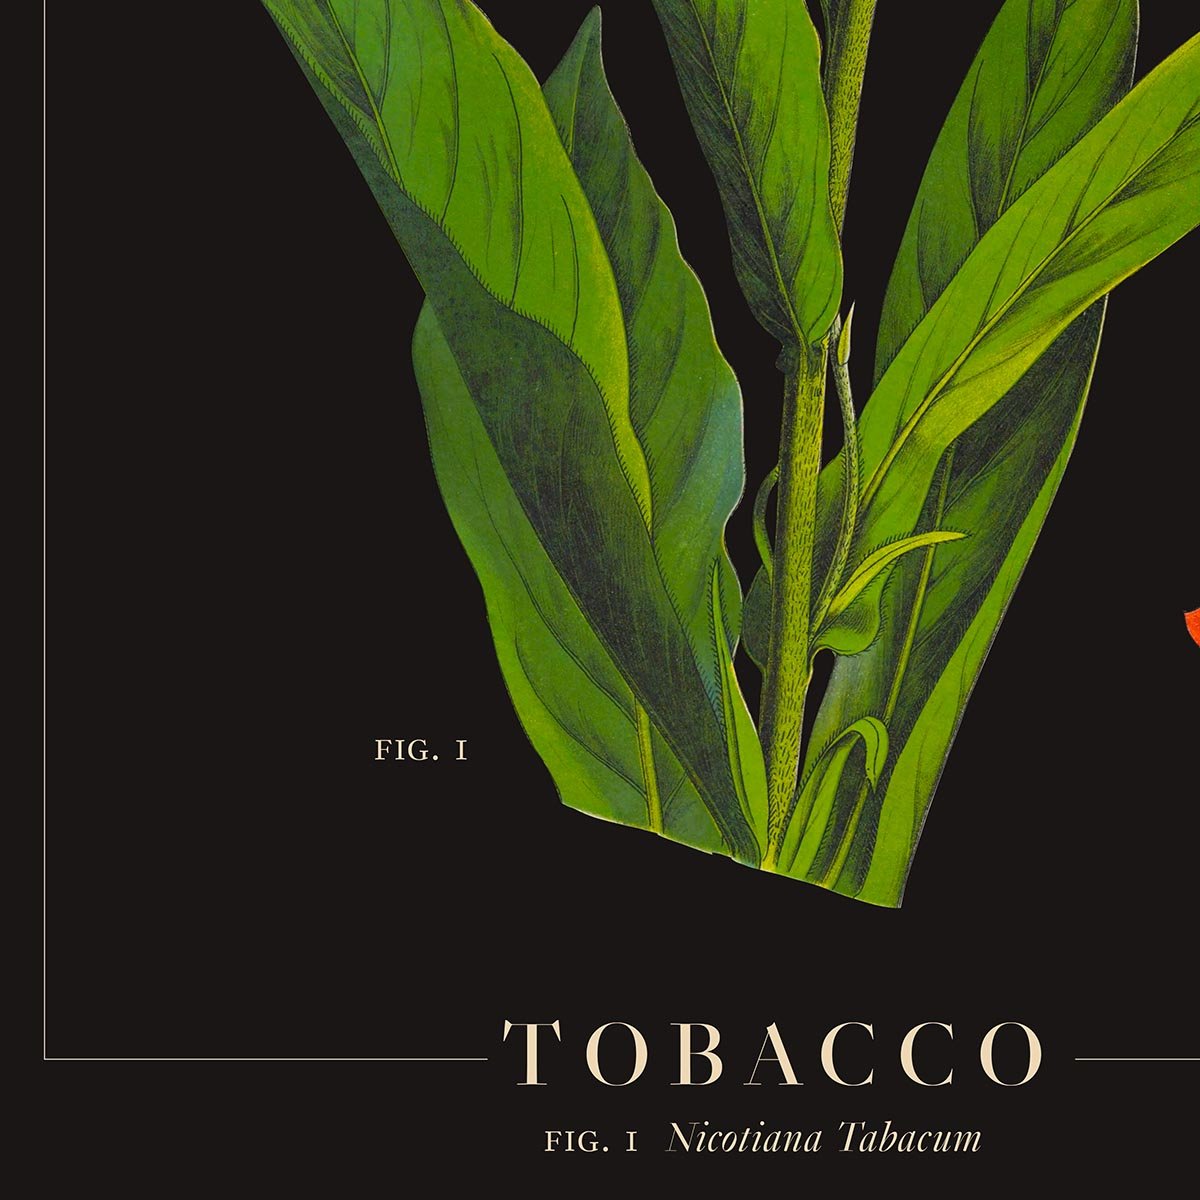 Tobacco Botanical Poster